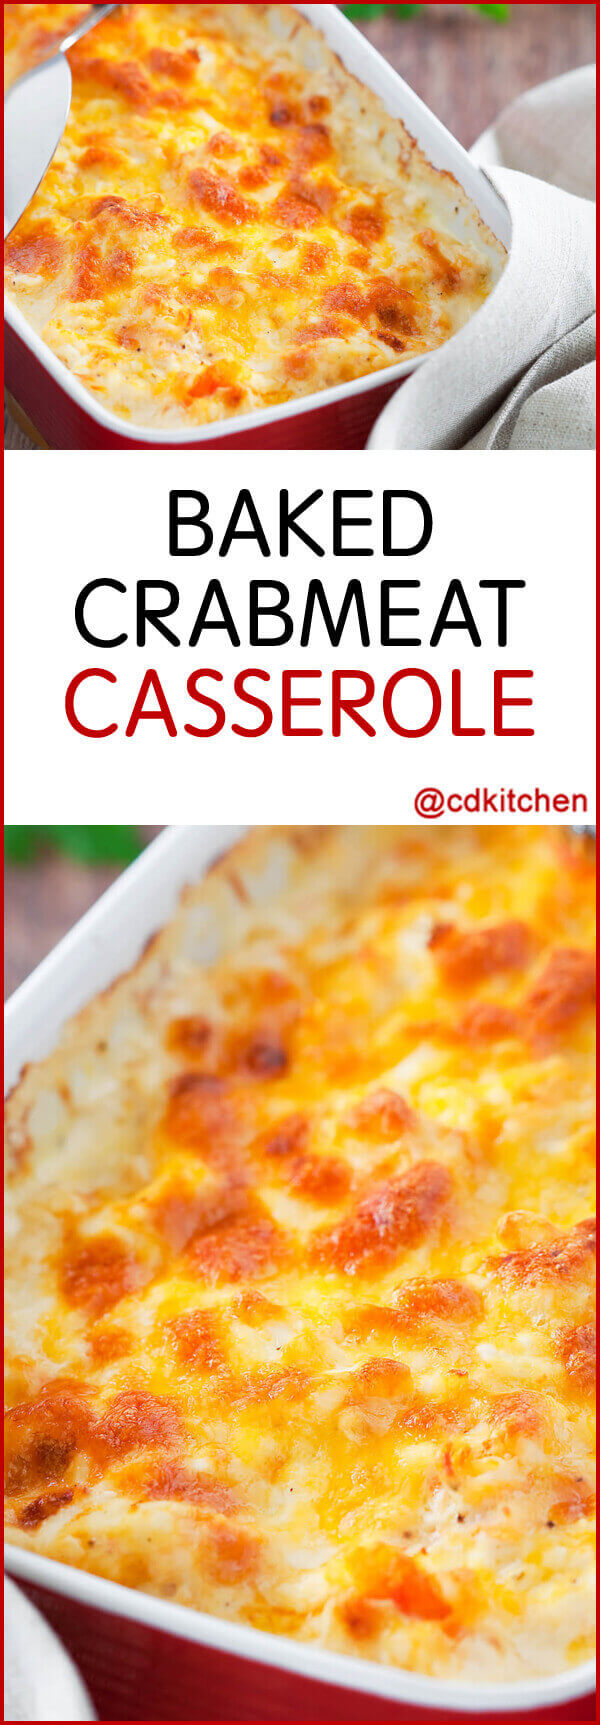 Baked Crabmeat Casserole Recipe | CDKitchen.com